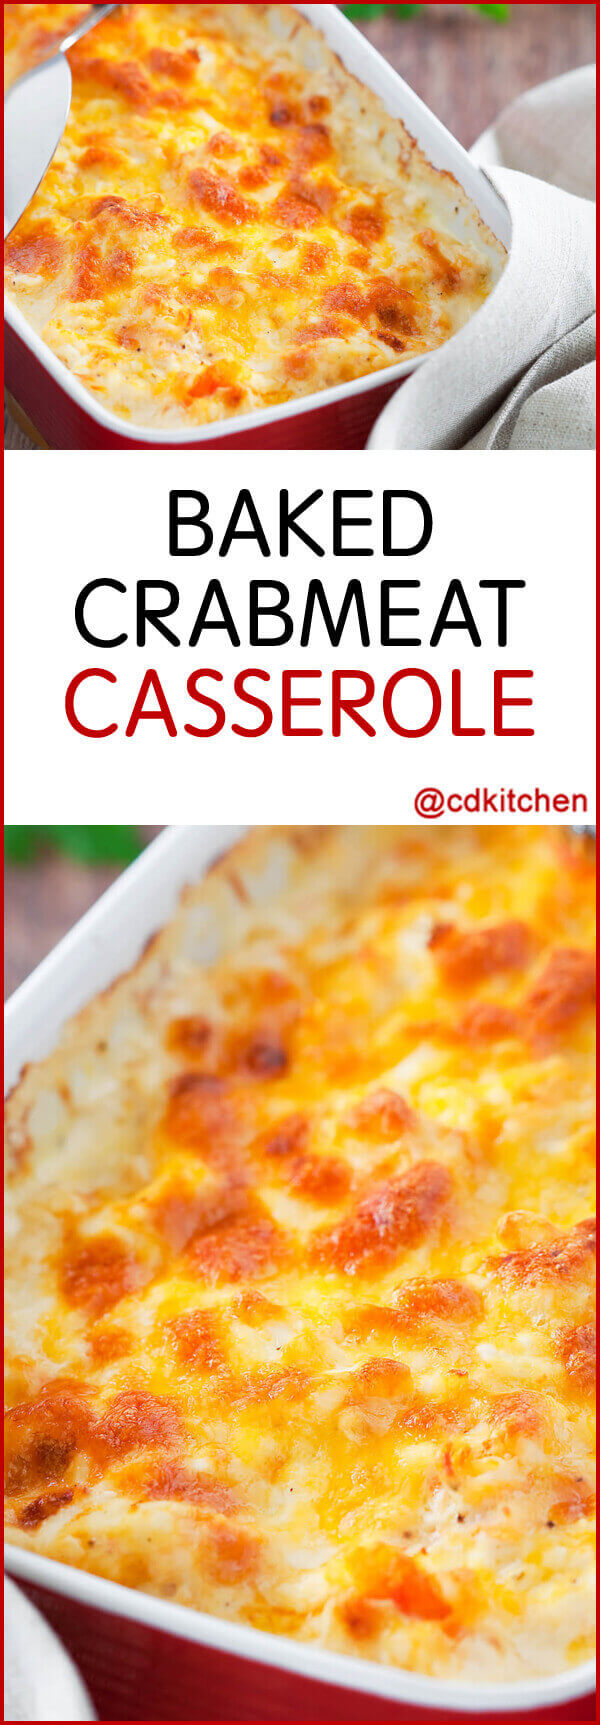 Baked Crabmeat Casserole Recipe | CDKitchen.com